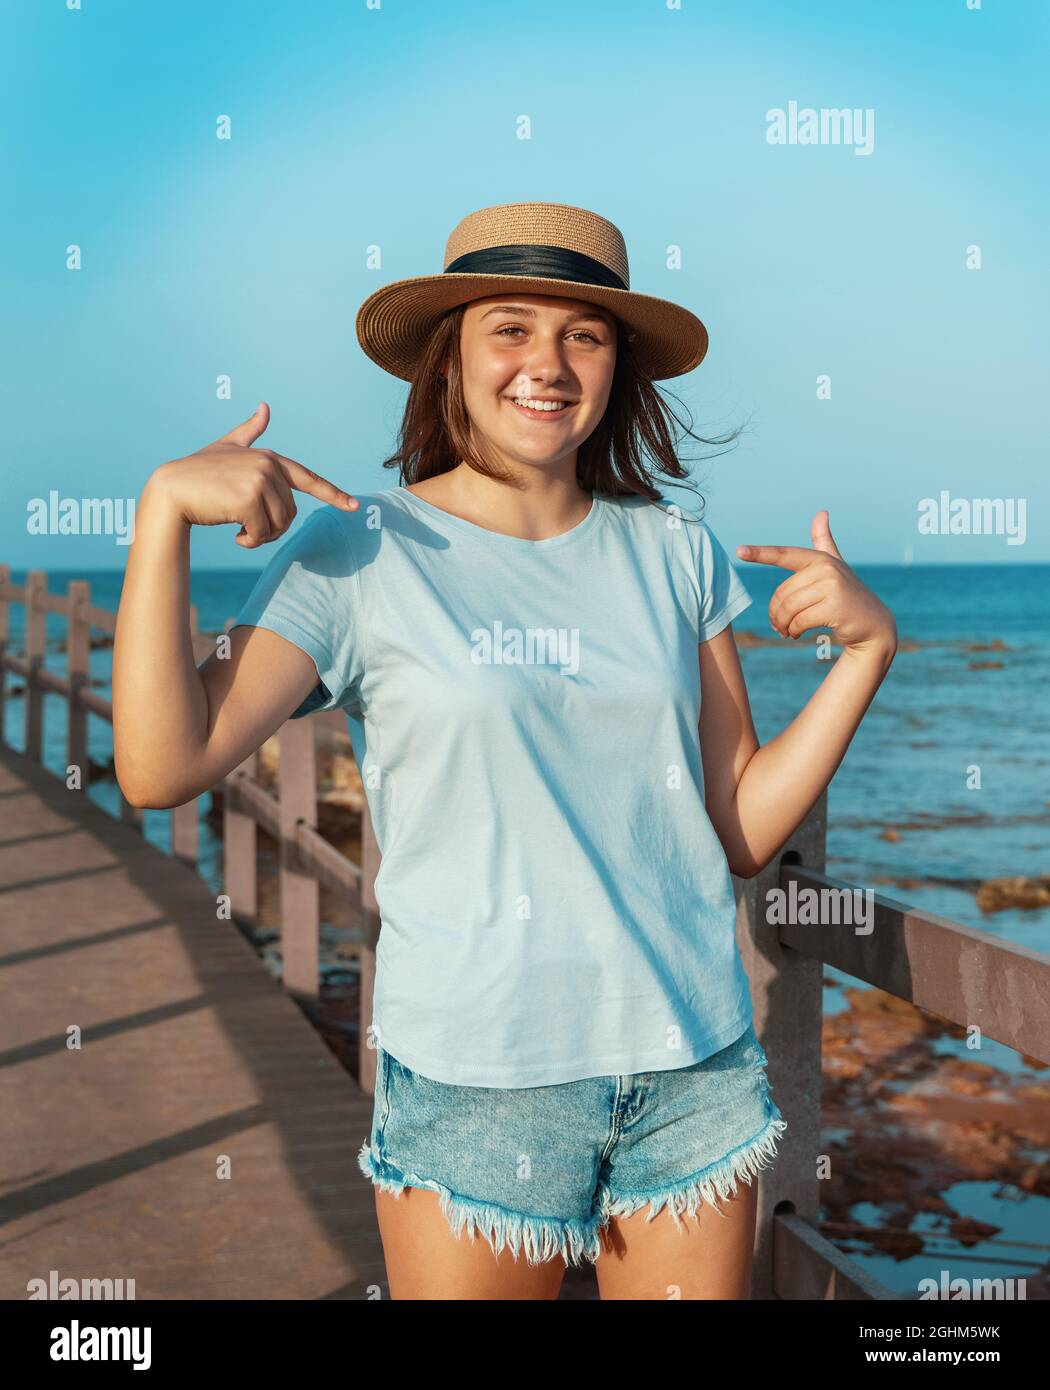 Lächelndes Teenager-Mädchen, das auf einem hölzernen Bürgersteig am Meer in Strohhut, hellblauem T-Shirt und mit dem Blick darauf bleibt. T-Shirt-Modell Stockfoto